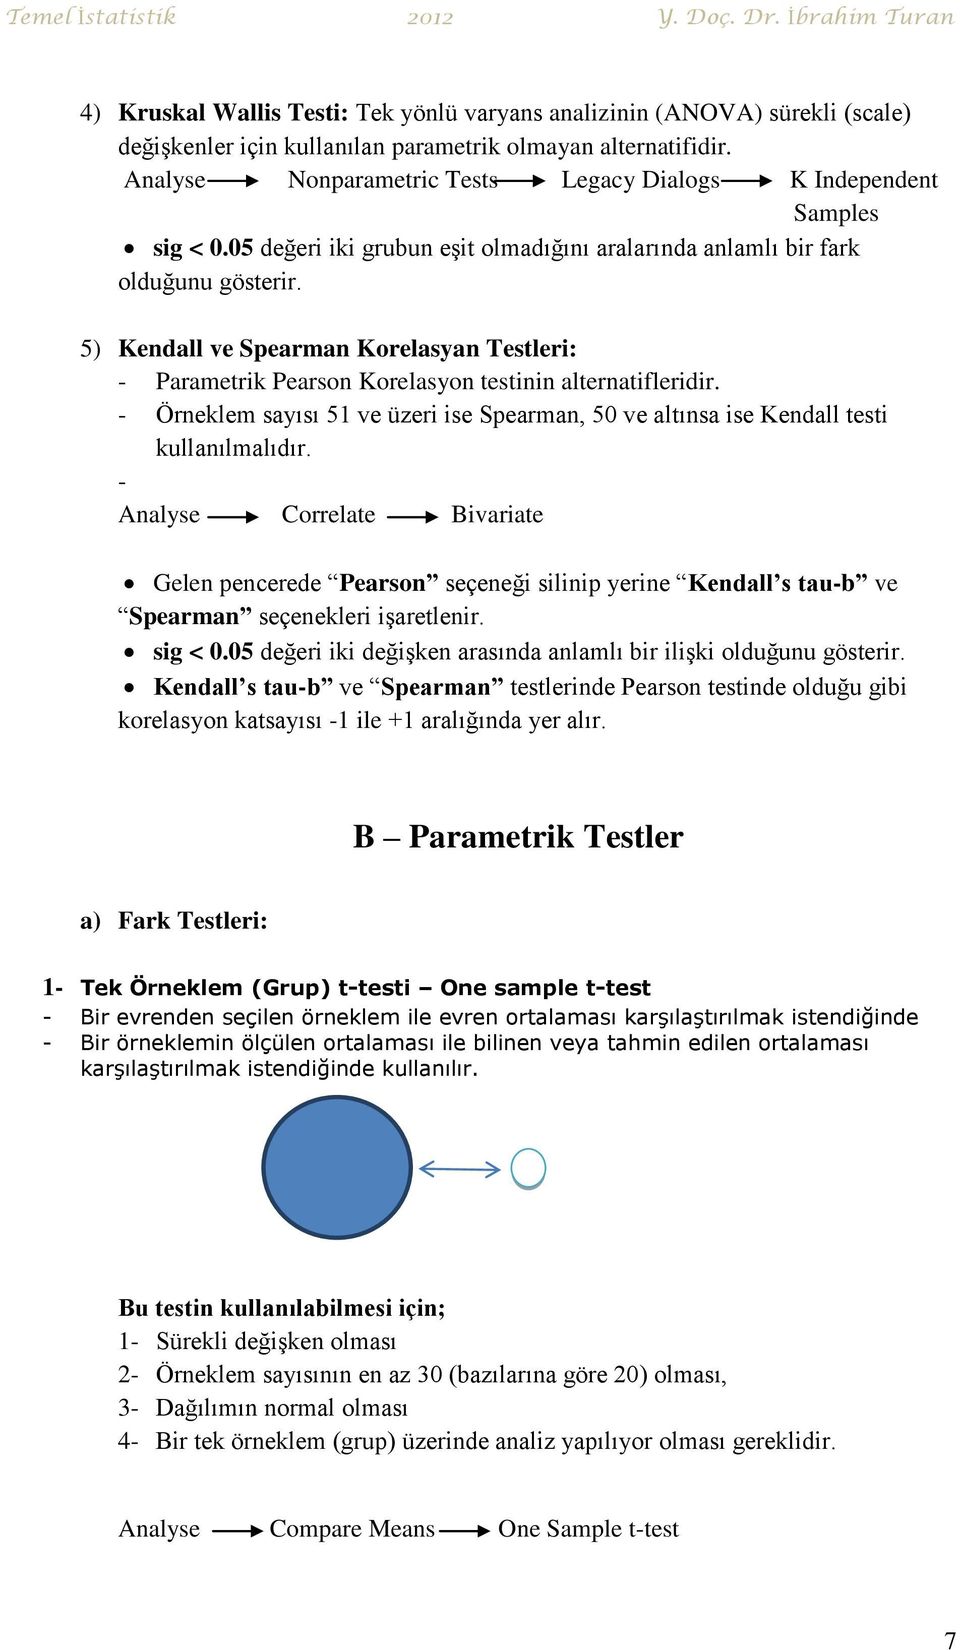 5) Kendall ve Spearman Korelasyan Testleri: - Parametrik Pearson Korelasyon testinin alternatifleridir. - Örneklem sayısı 51 ve üzeri ise Spearman, 50 ve altınsa ise Kendall testi kullanılmalıdır.